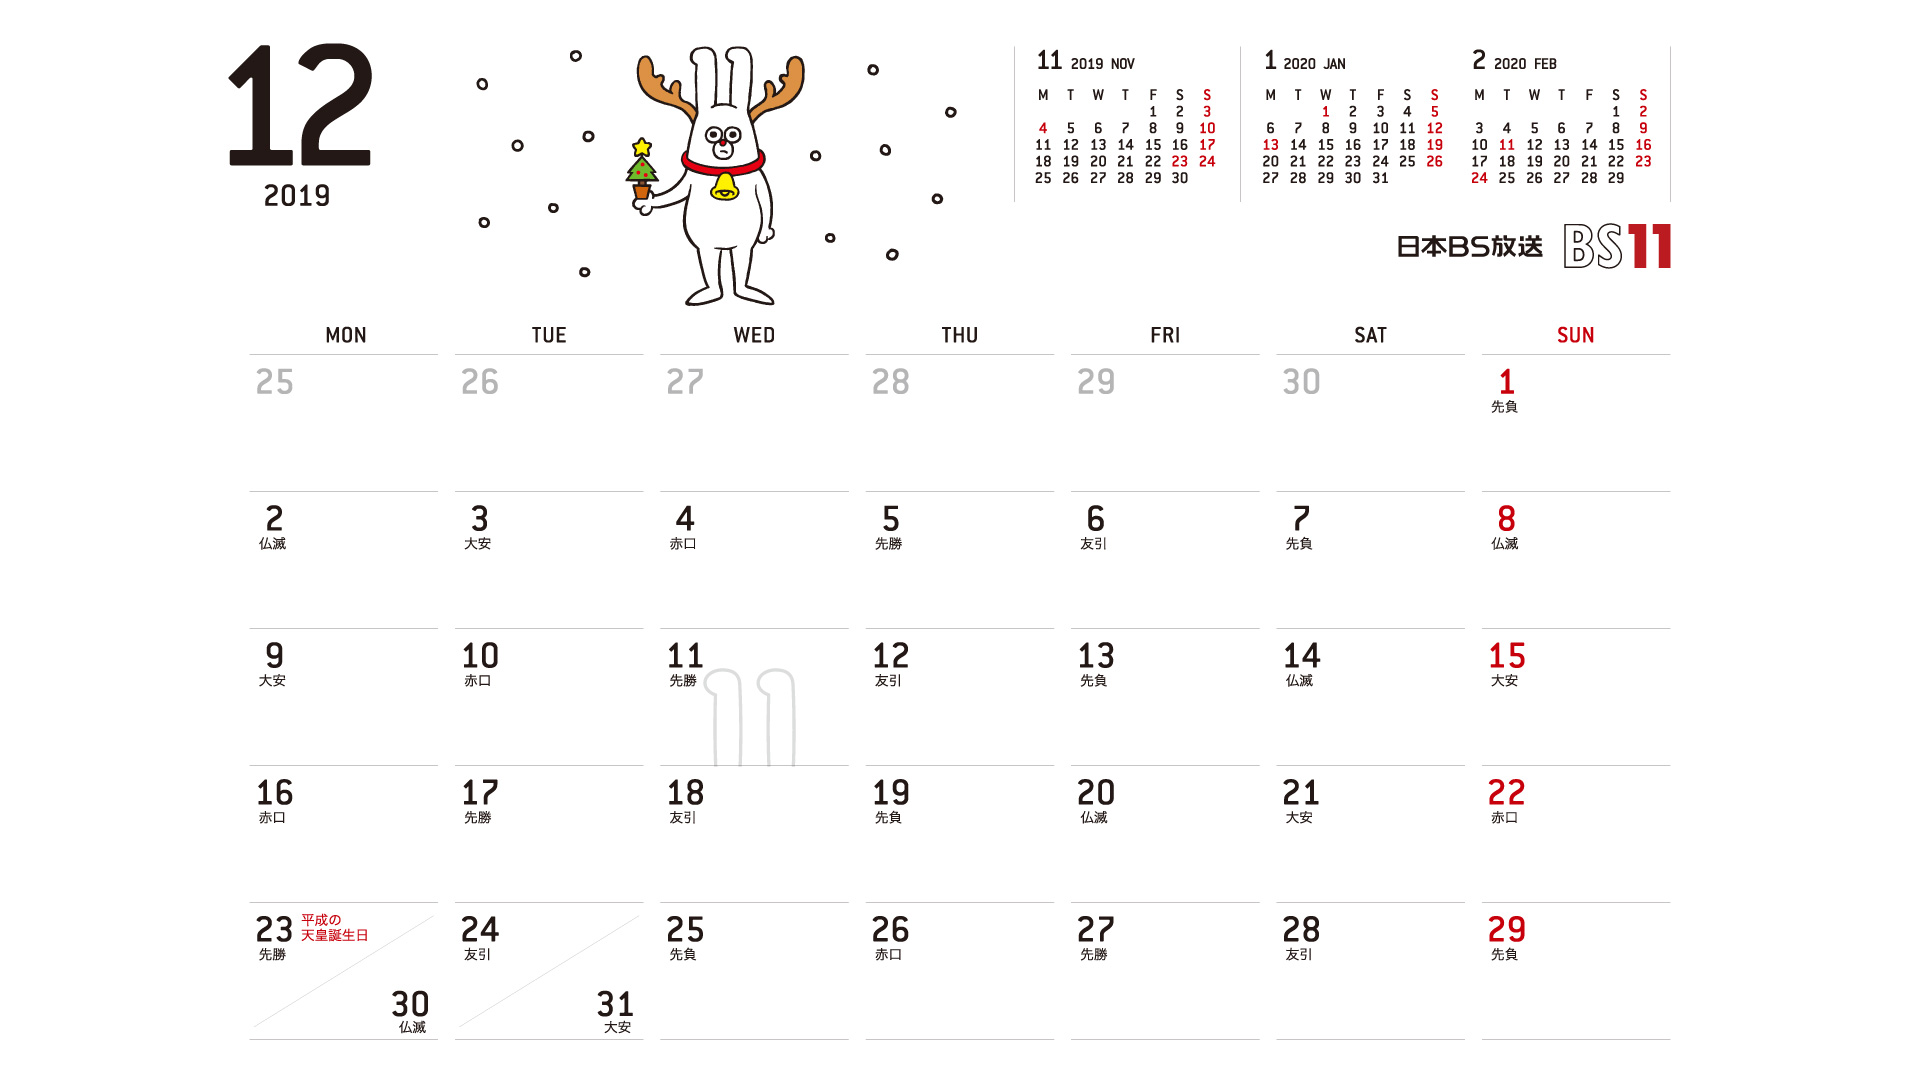 じゅういっちゃんのデジタルカレンダー2019年12月 Bs11 イレブン いつでも無料放送